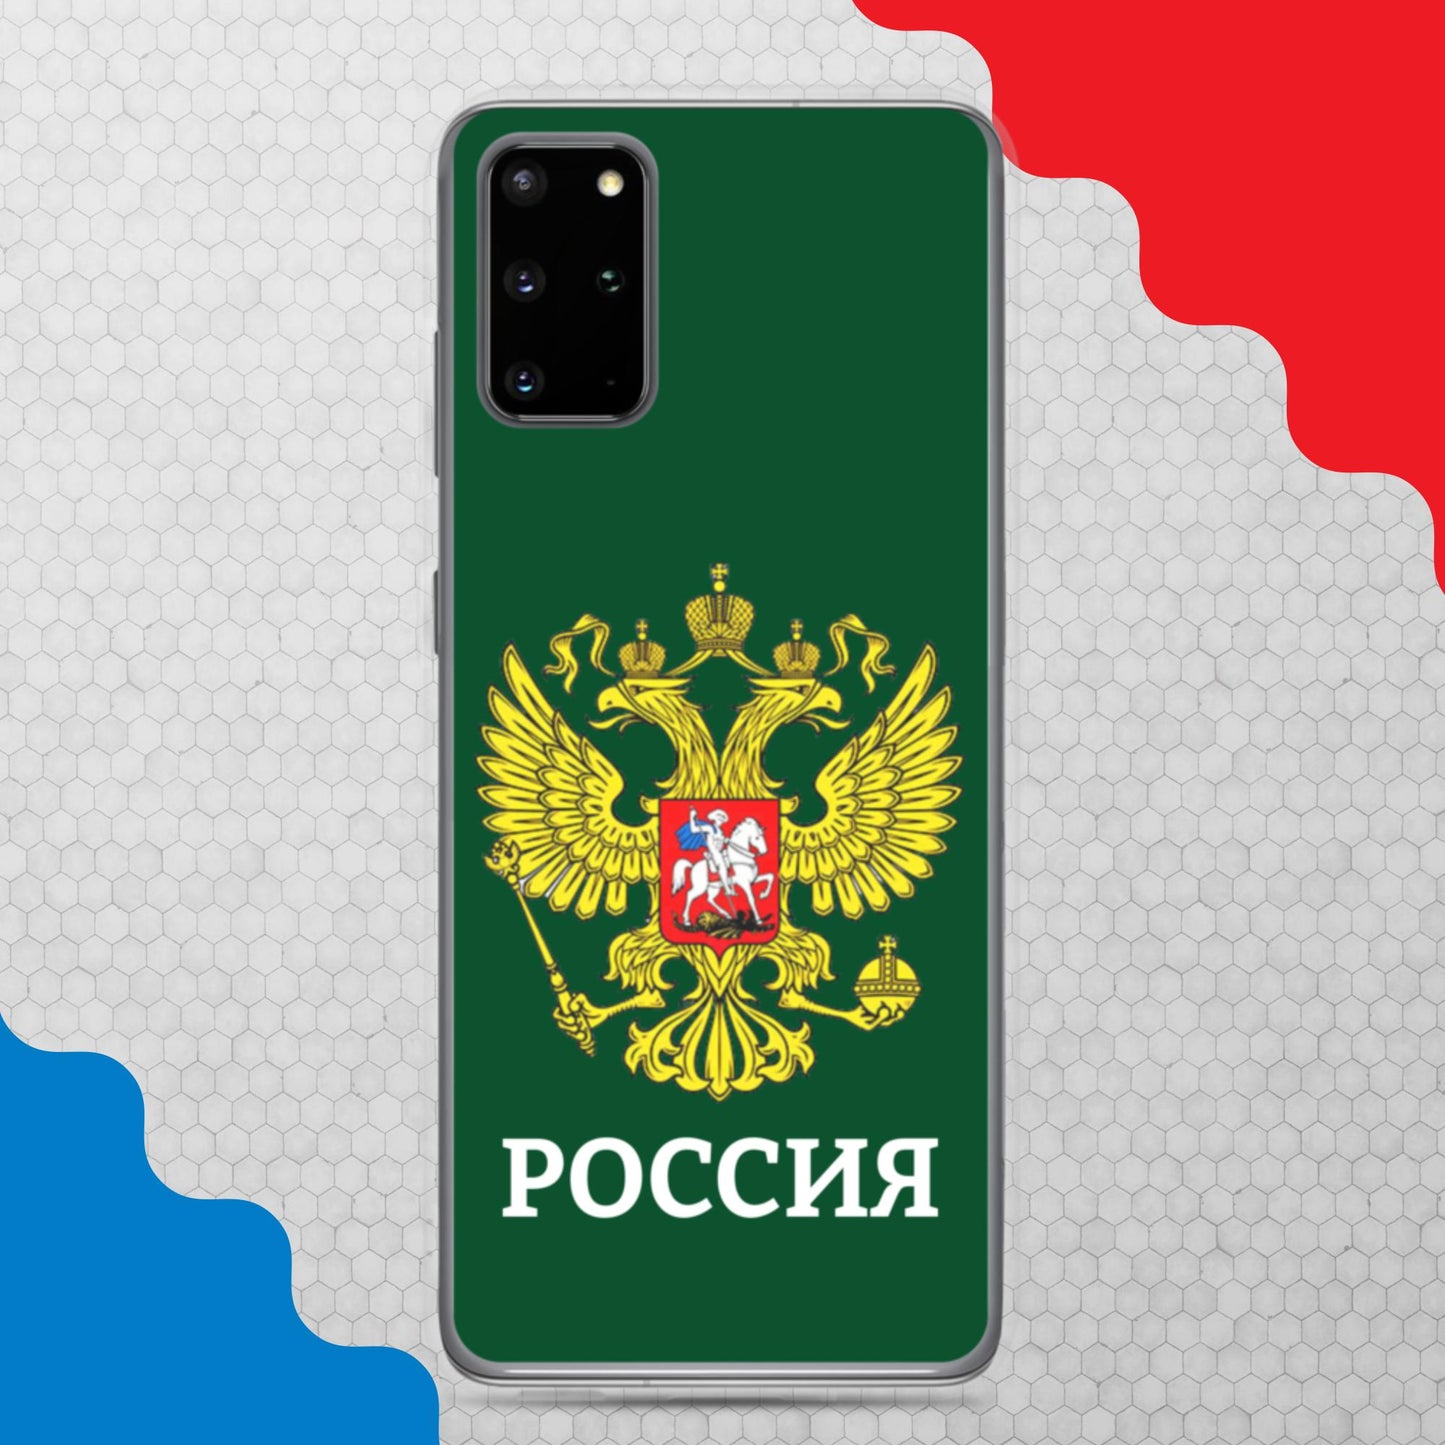 Samsung-Handyhülle mit Russland-Wappen in grün (alle Modelle)